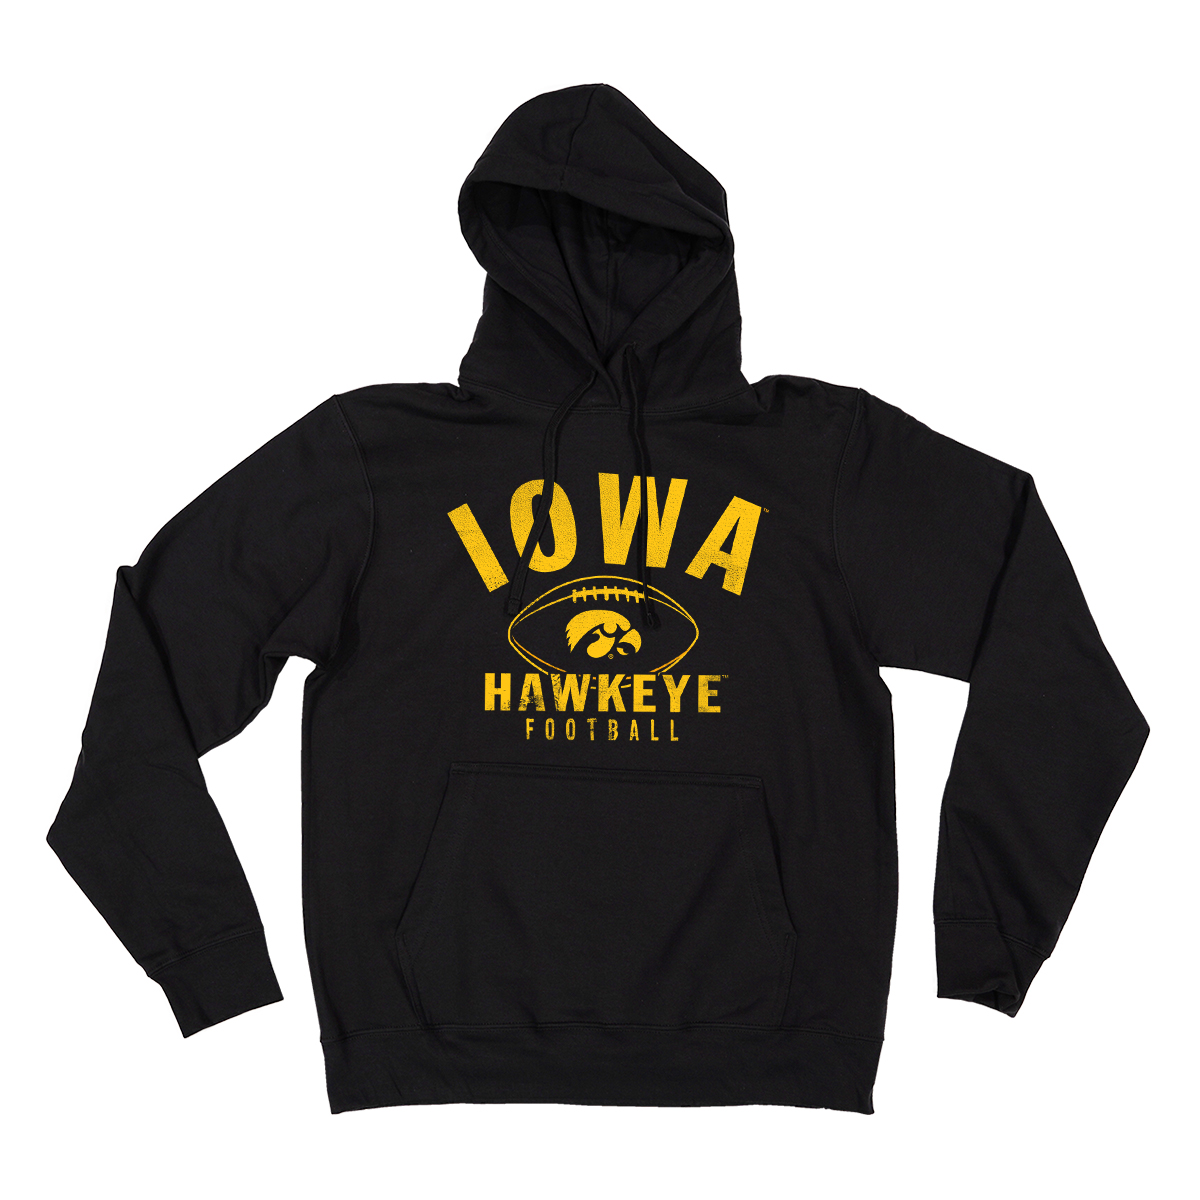 Iowa Hawkeye Football Hooded Sweatshirt-Black - Adcraft USA